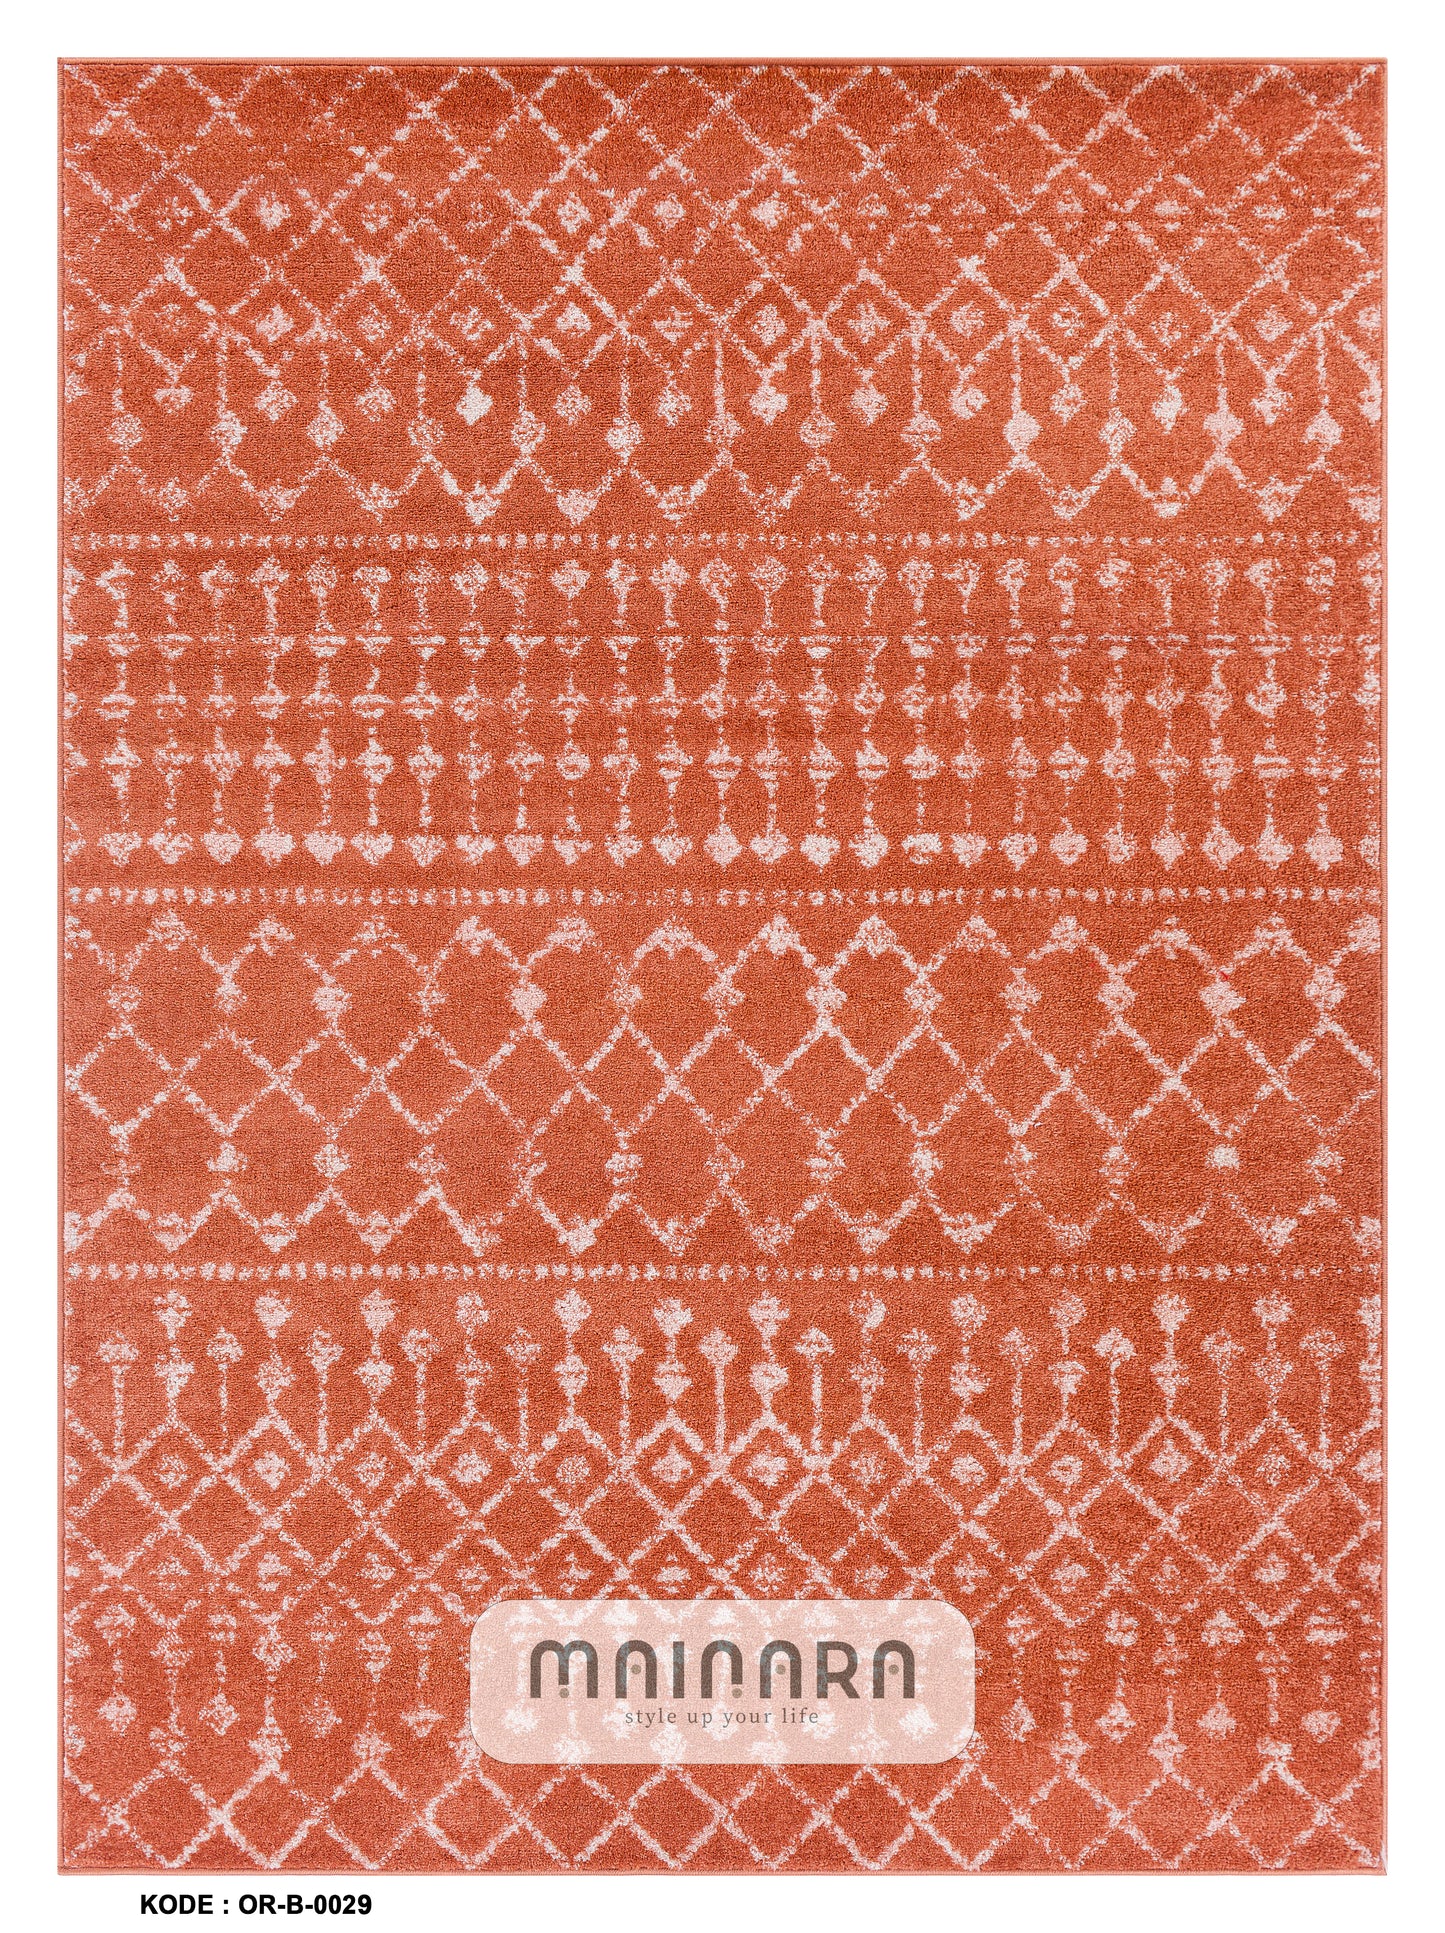 Karpet Bohemian (OR-B-0029) - Orange